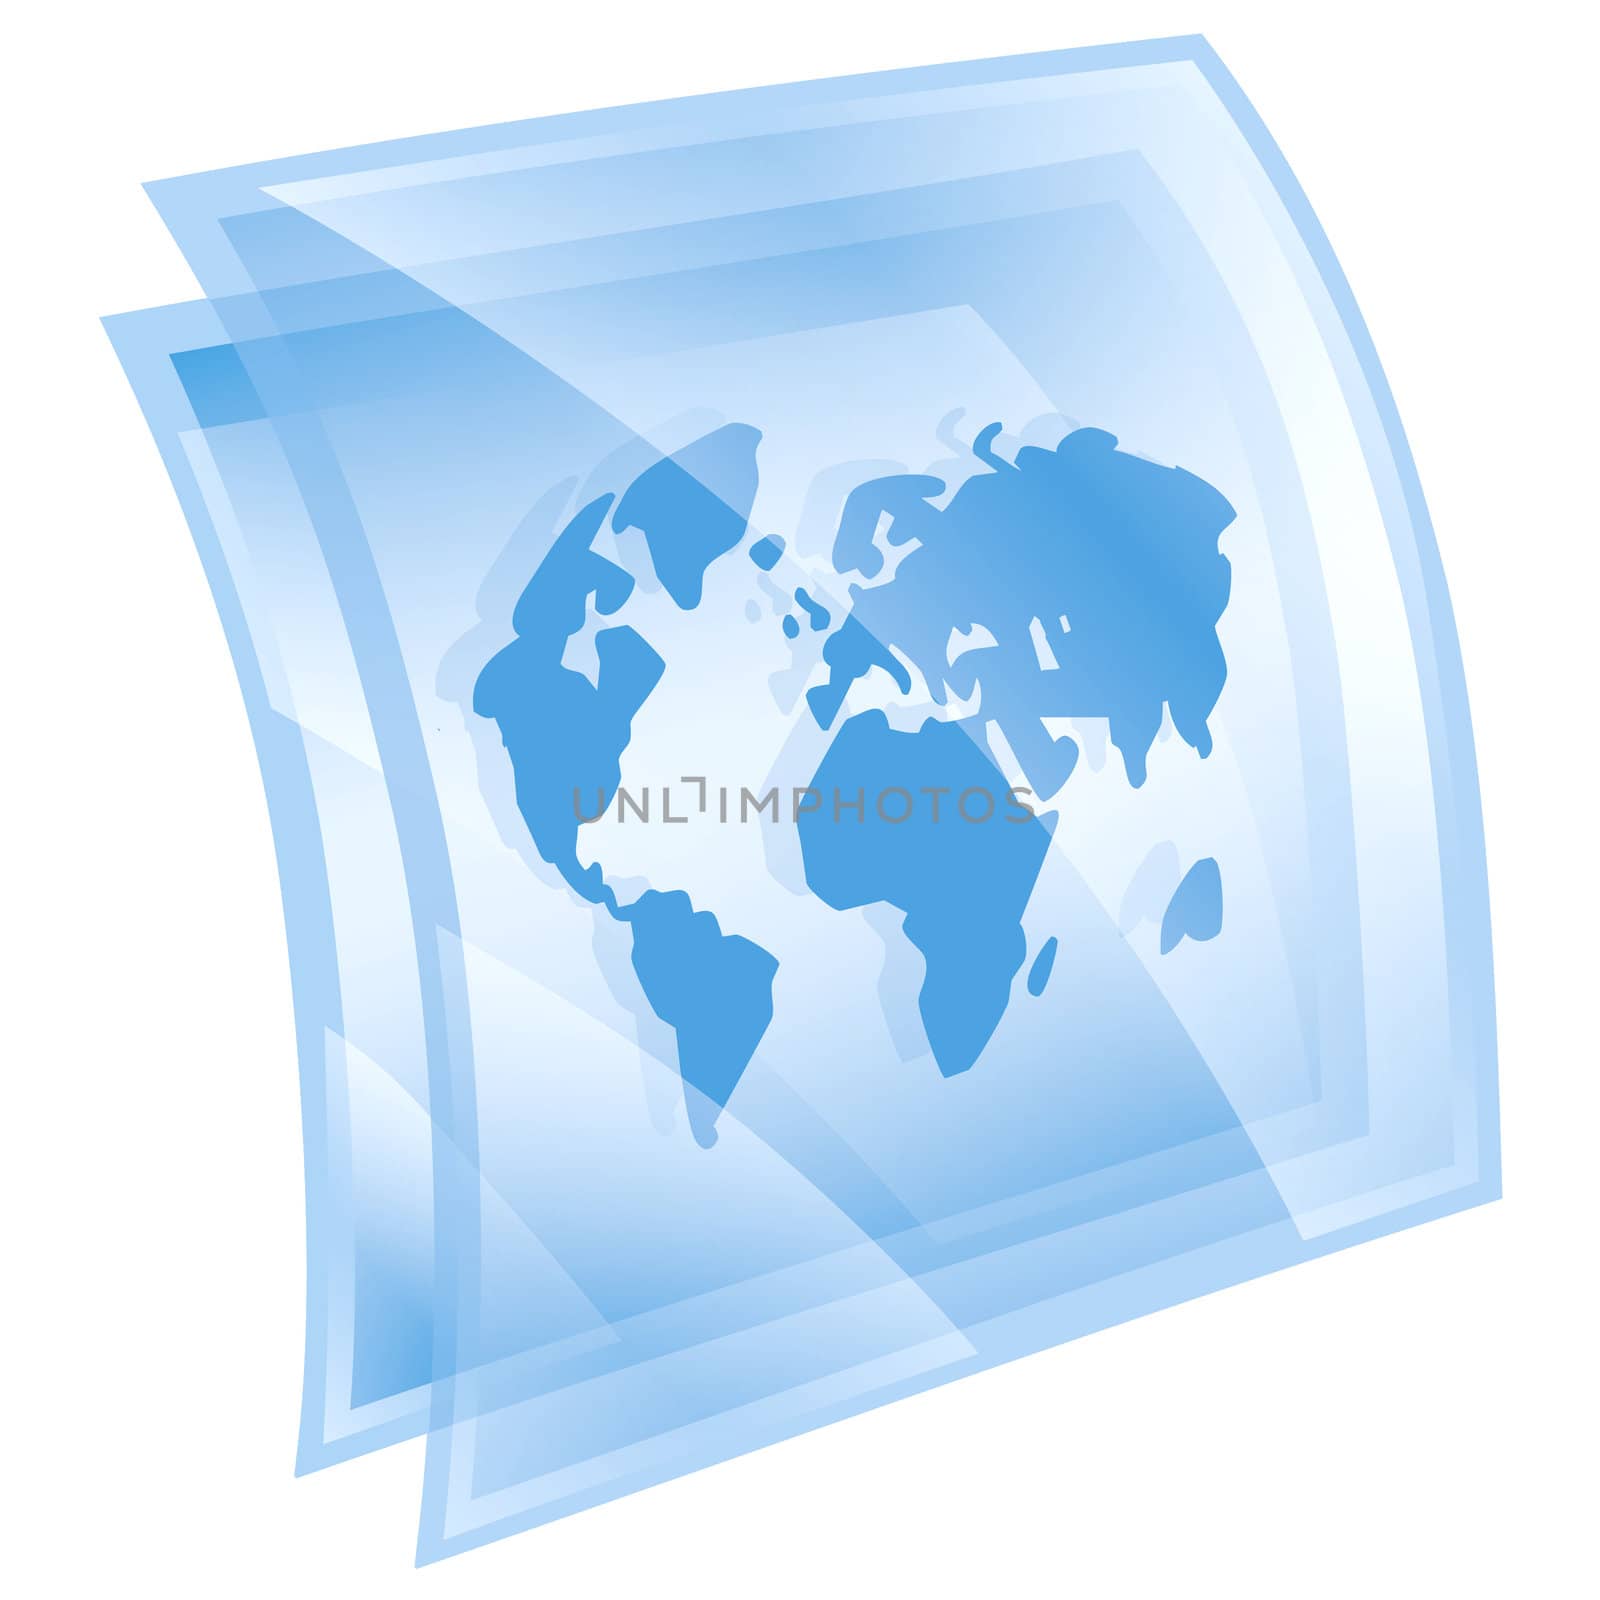 world icon blue, isolated on white background